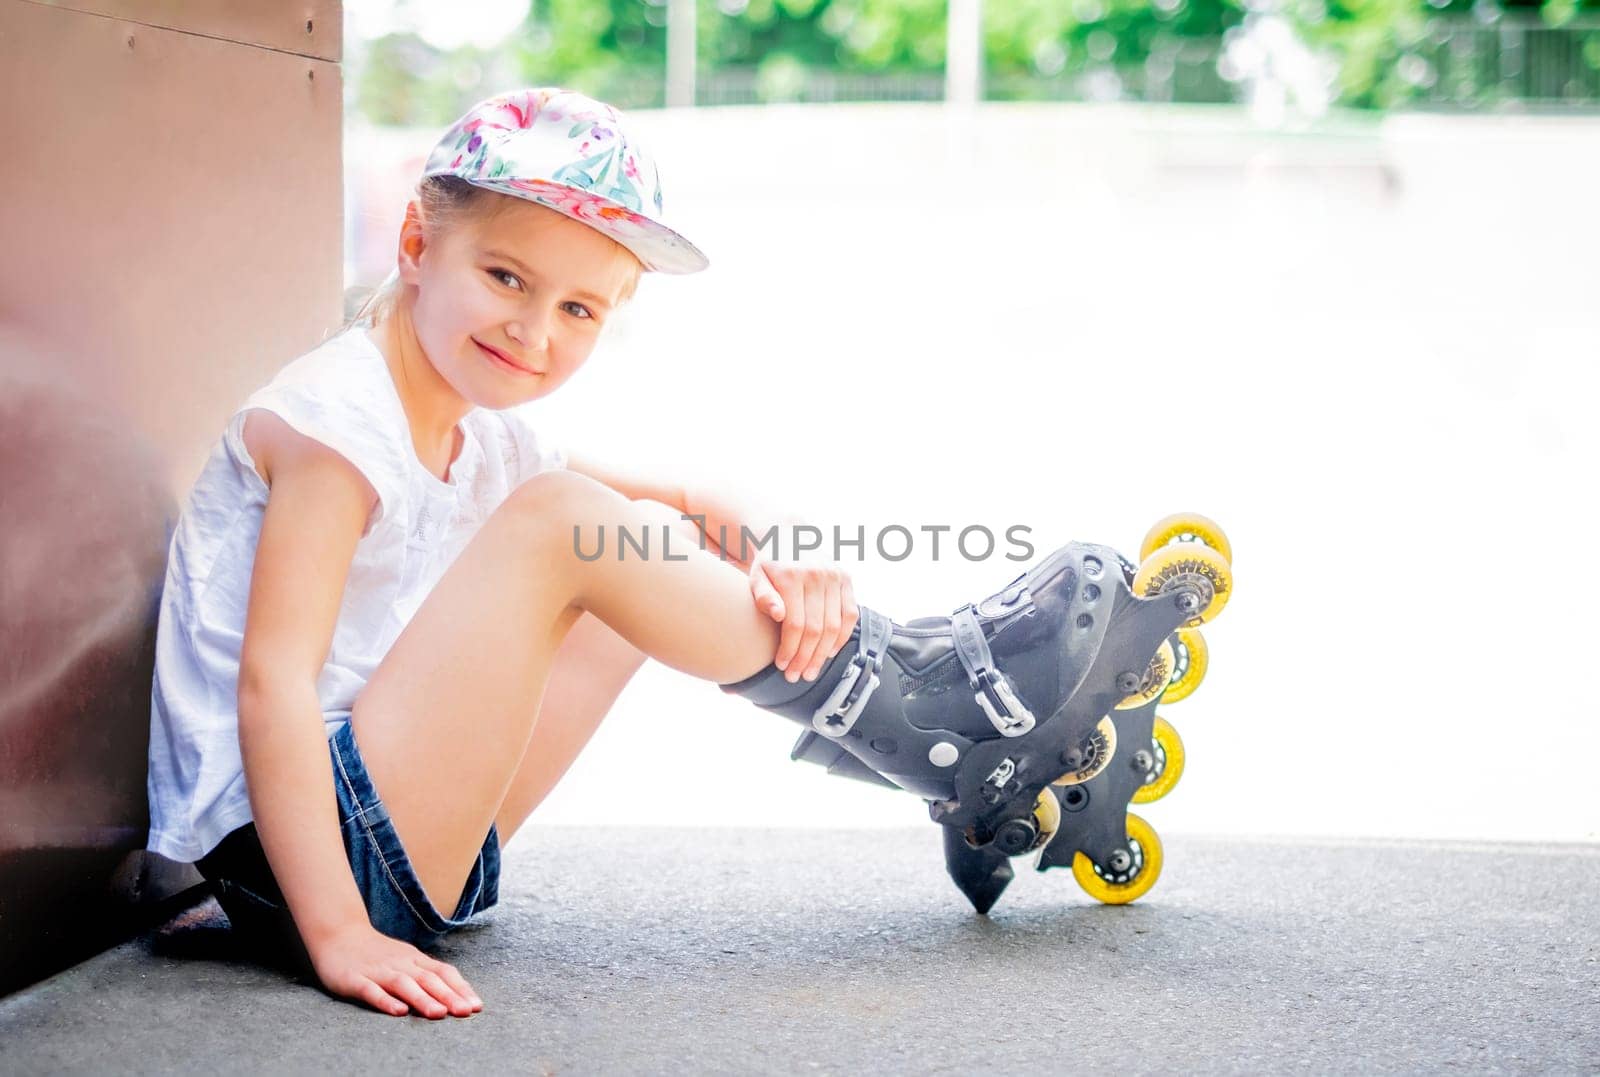 girl on roller skates by GekaSkr